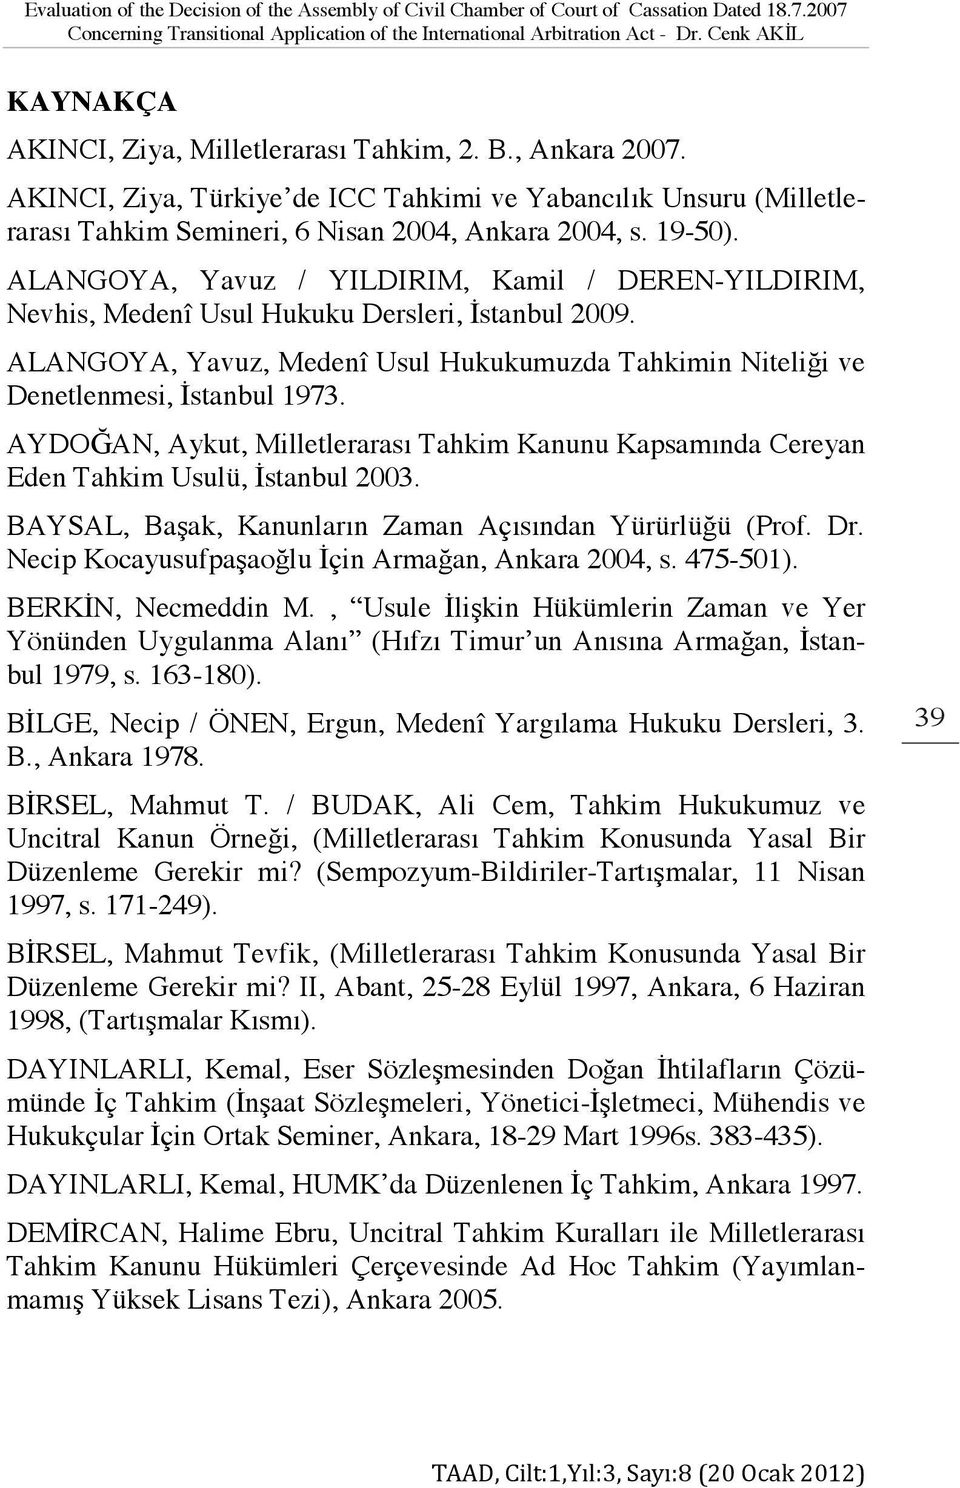 19-50). ALANGOYA, Yavuz / YILDIRIM, Kamil / DEREN-YILDIRIM, Nevhis, Medenî Usul Hukuku Dersleri, İstanbul 2009.